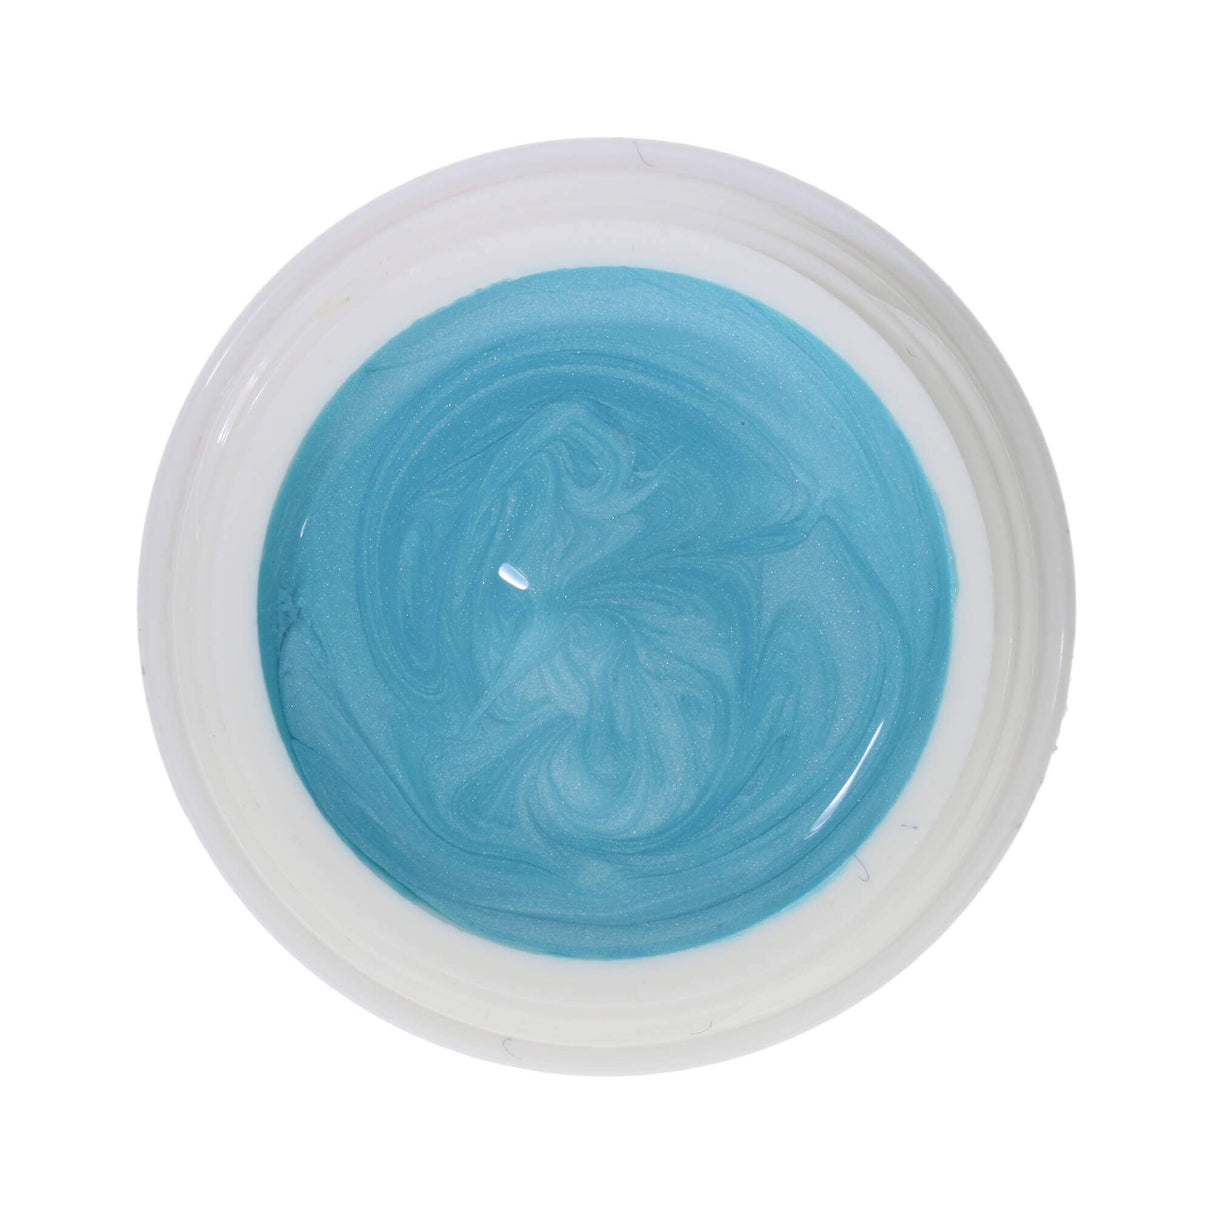 # 337 Premium EFFECT Color Gel 5ml Màu xanh ngọc nhạt với ánh kim sa mỏng manh